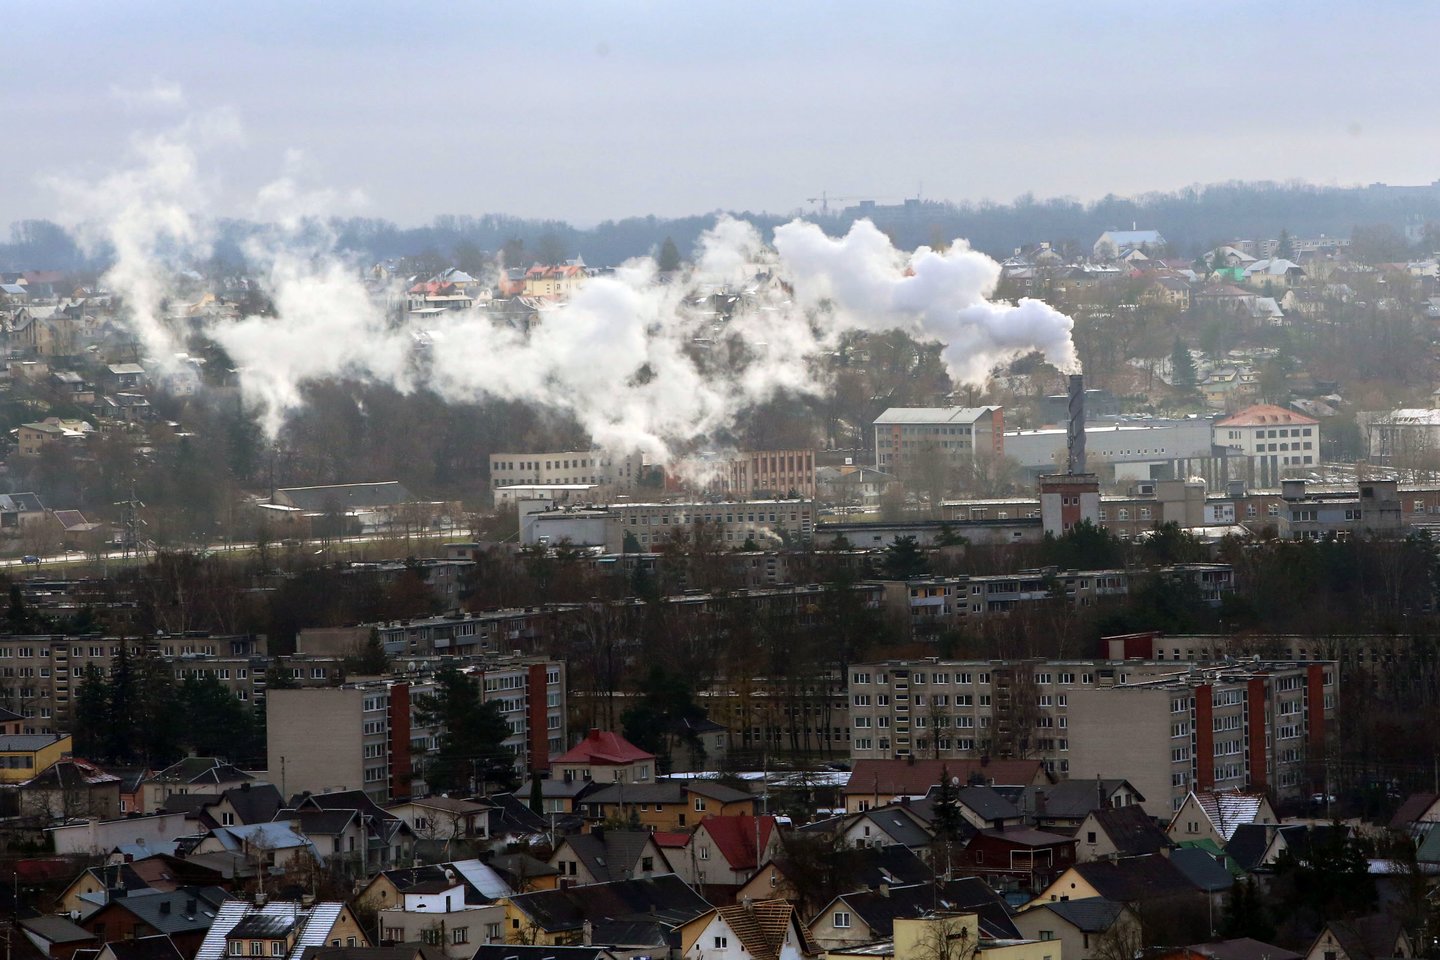 Kauno miesto savivaldybės įmonė skelbiasi net 90 proc. tiekiamos šilumos gaminanti iš atsinaujinančių energijos šaltinių.<br>M.Patašiaus nuotr.